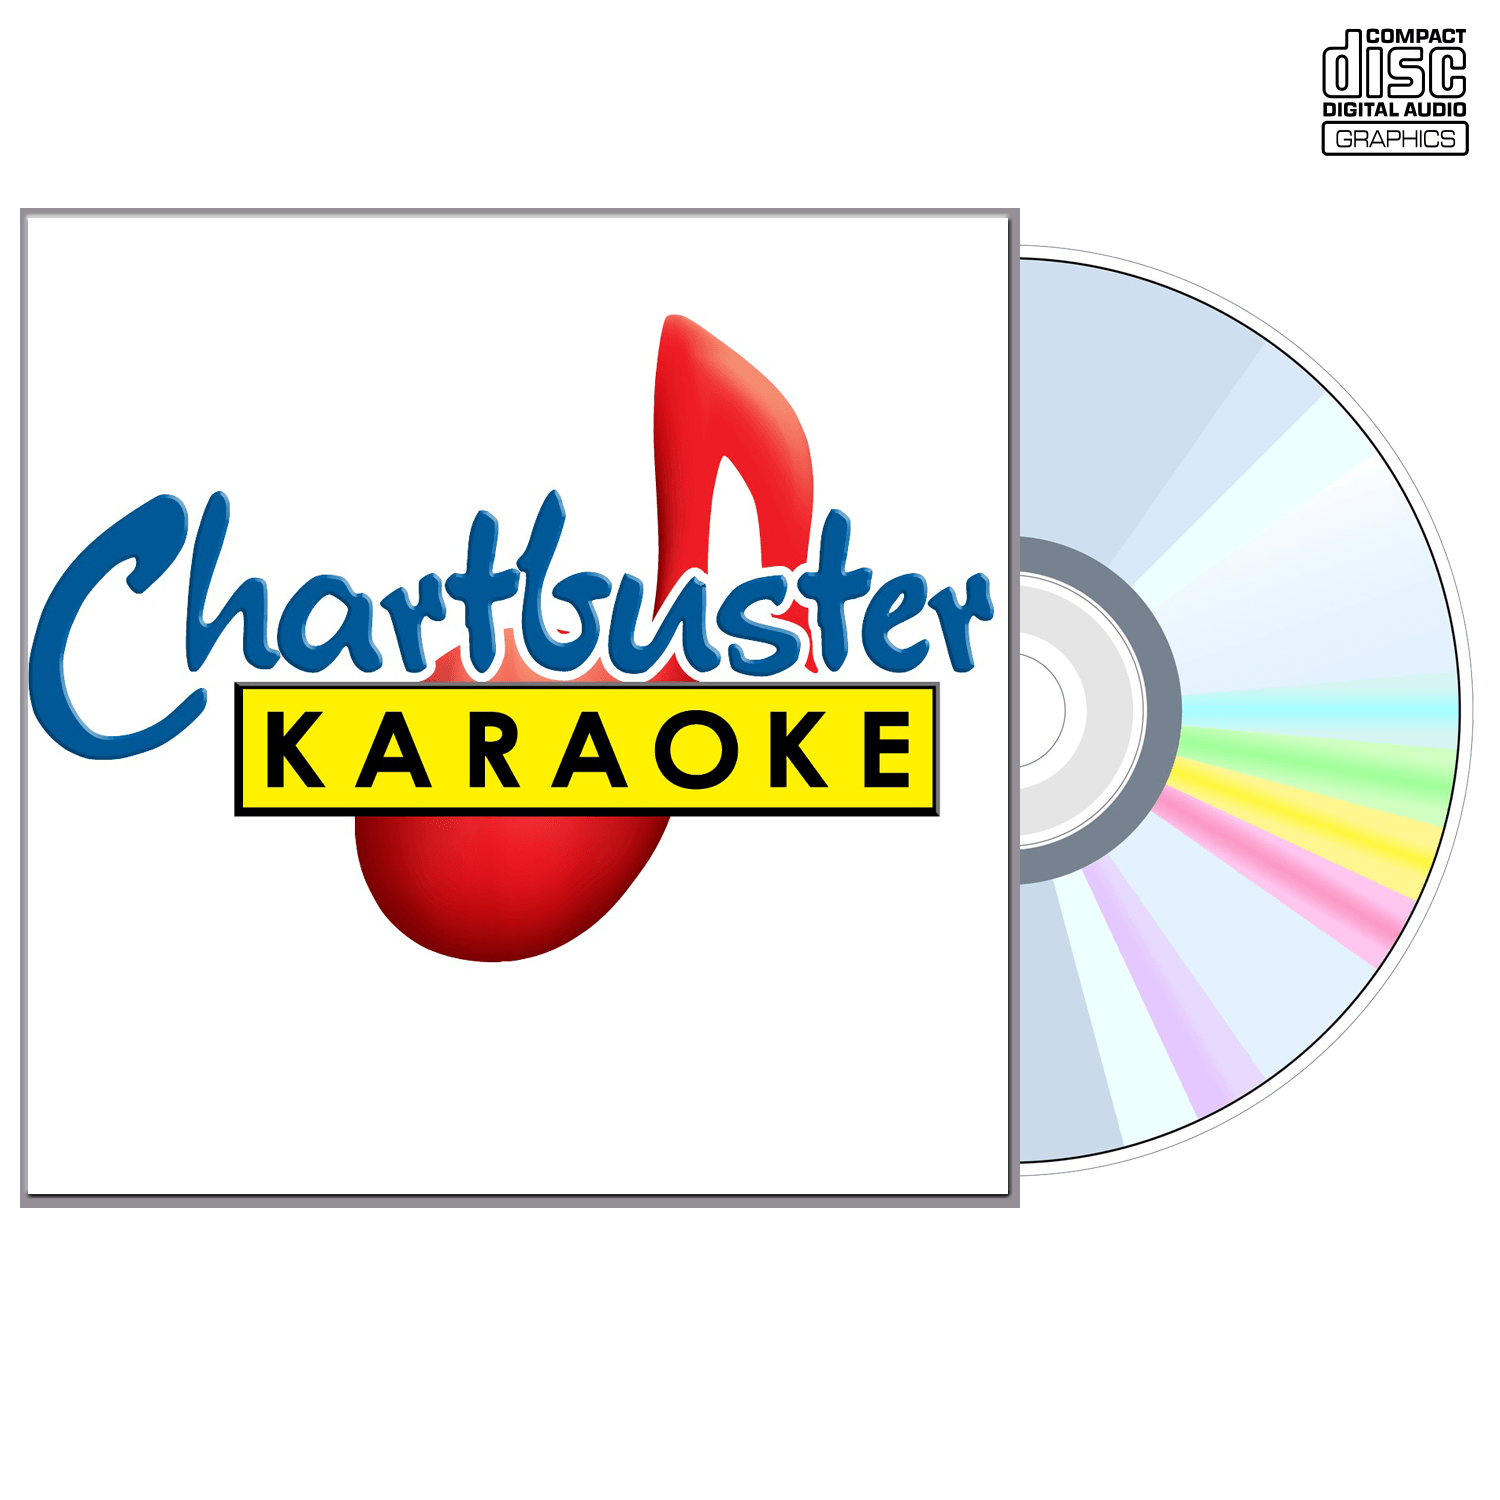 Charlie Daniels Band - CD+G - Chartbuster Karaoke - Karaoke Home Entertainment